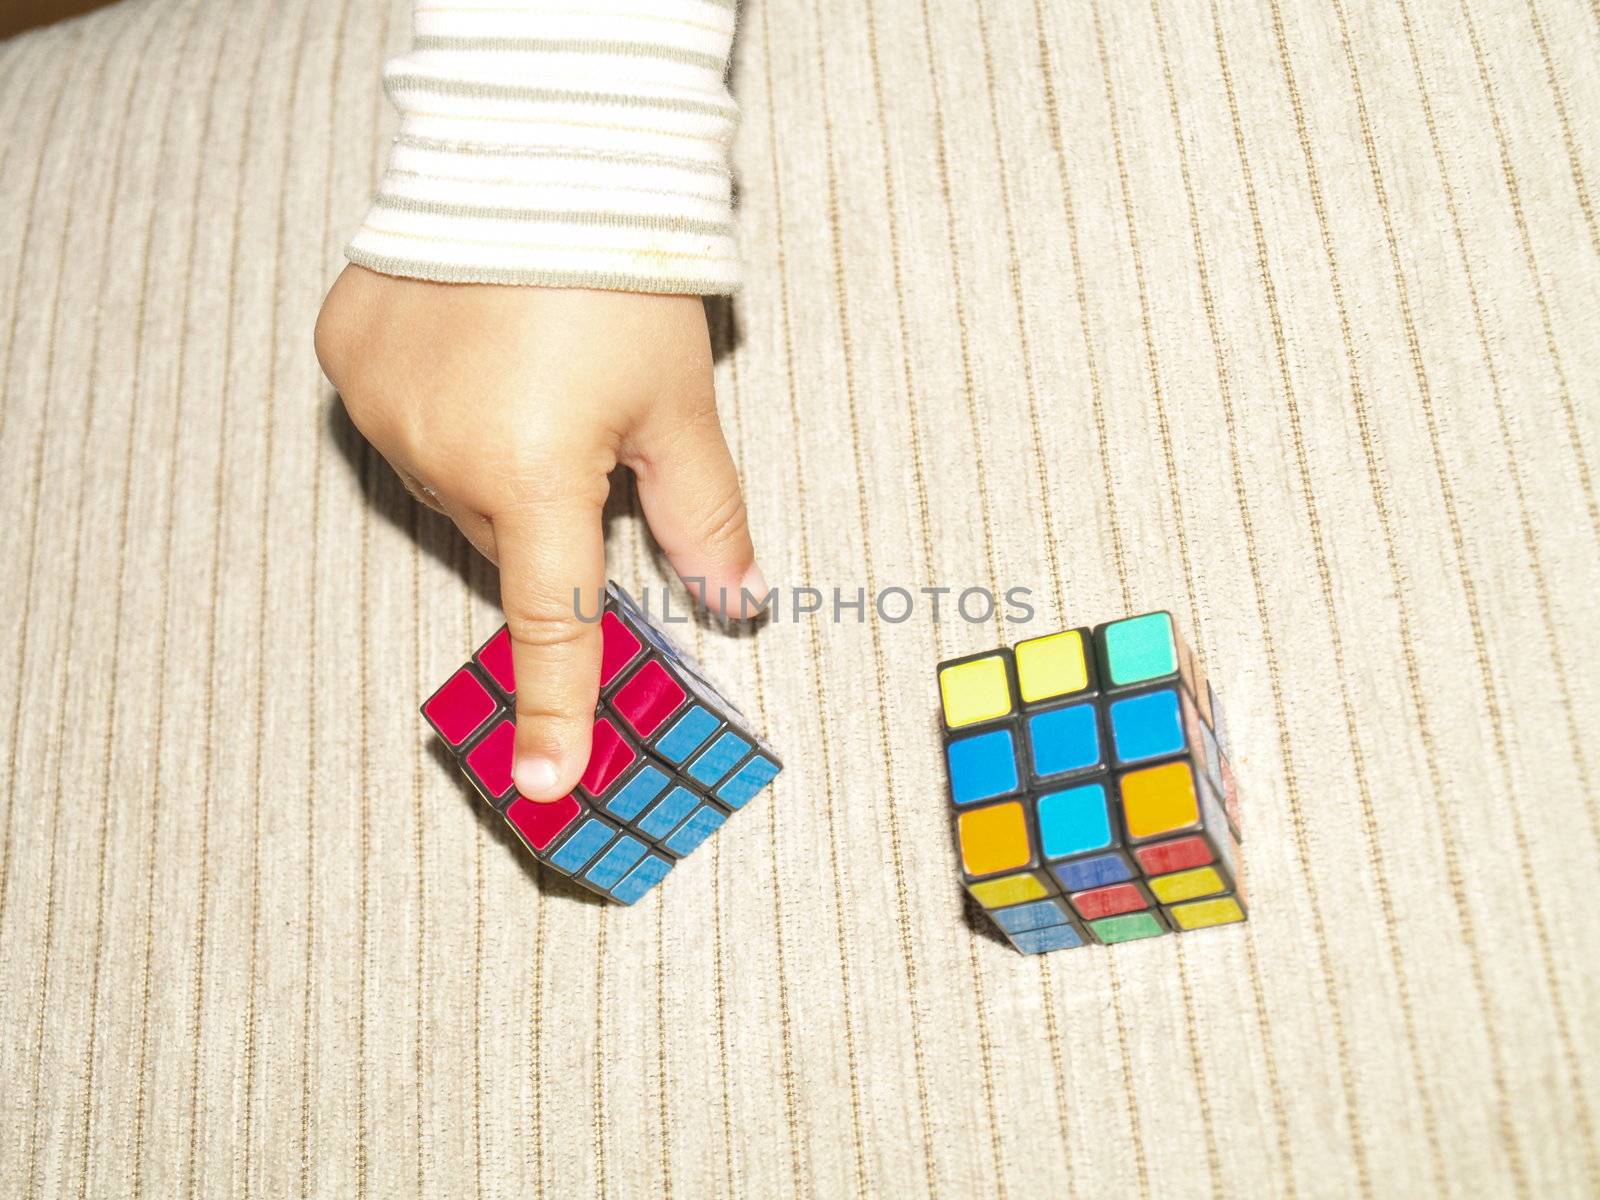 magic cubes by viviolsen